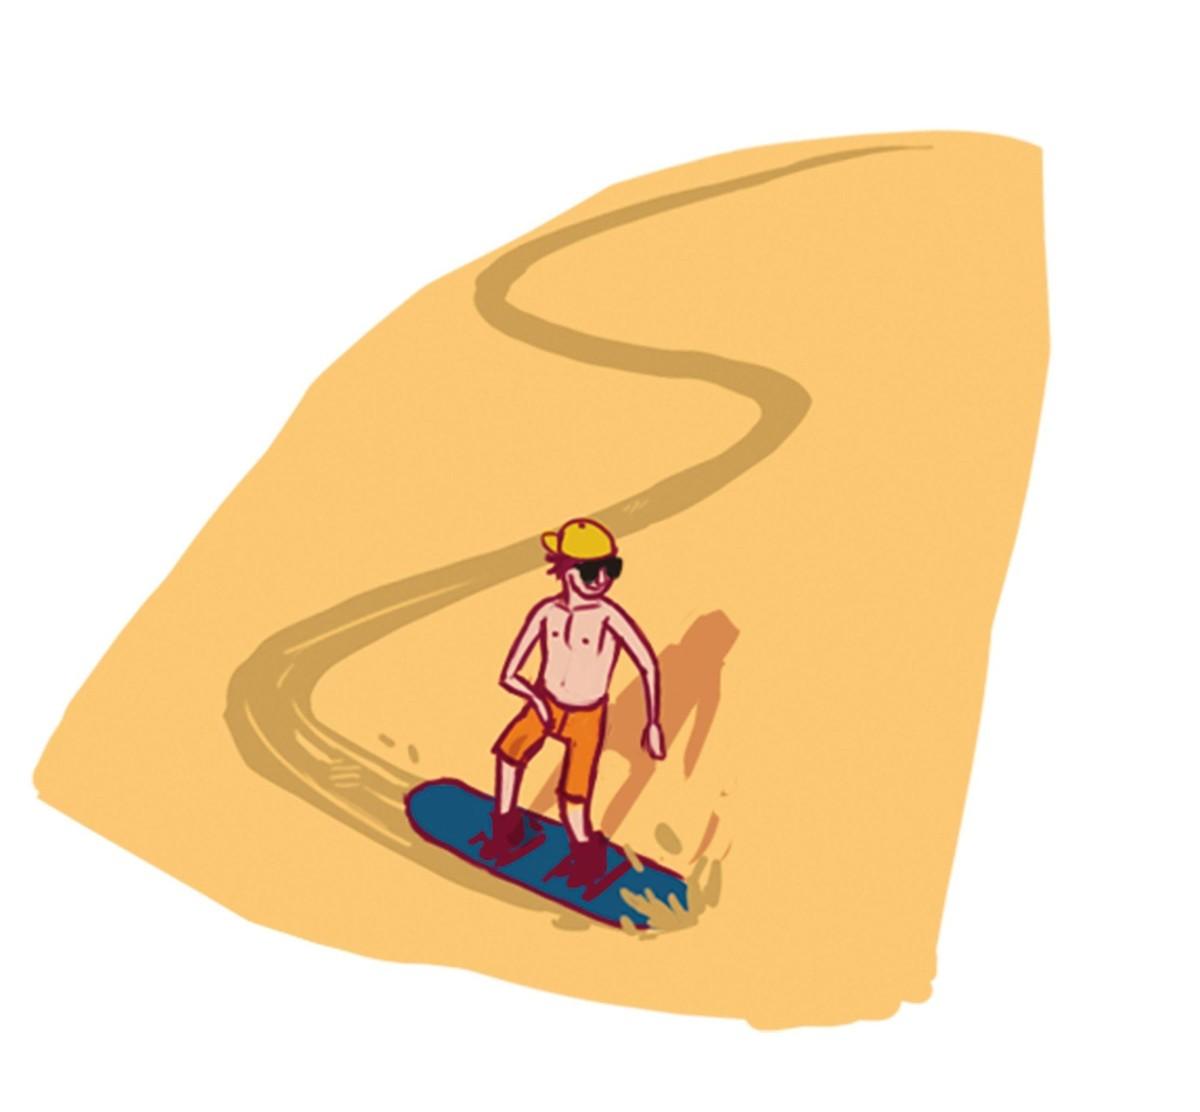 Une personne qui fait duu sandboarding